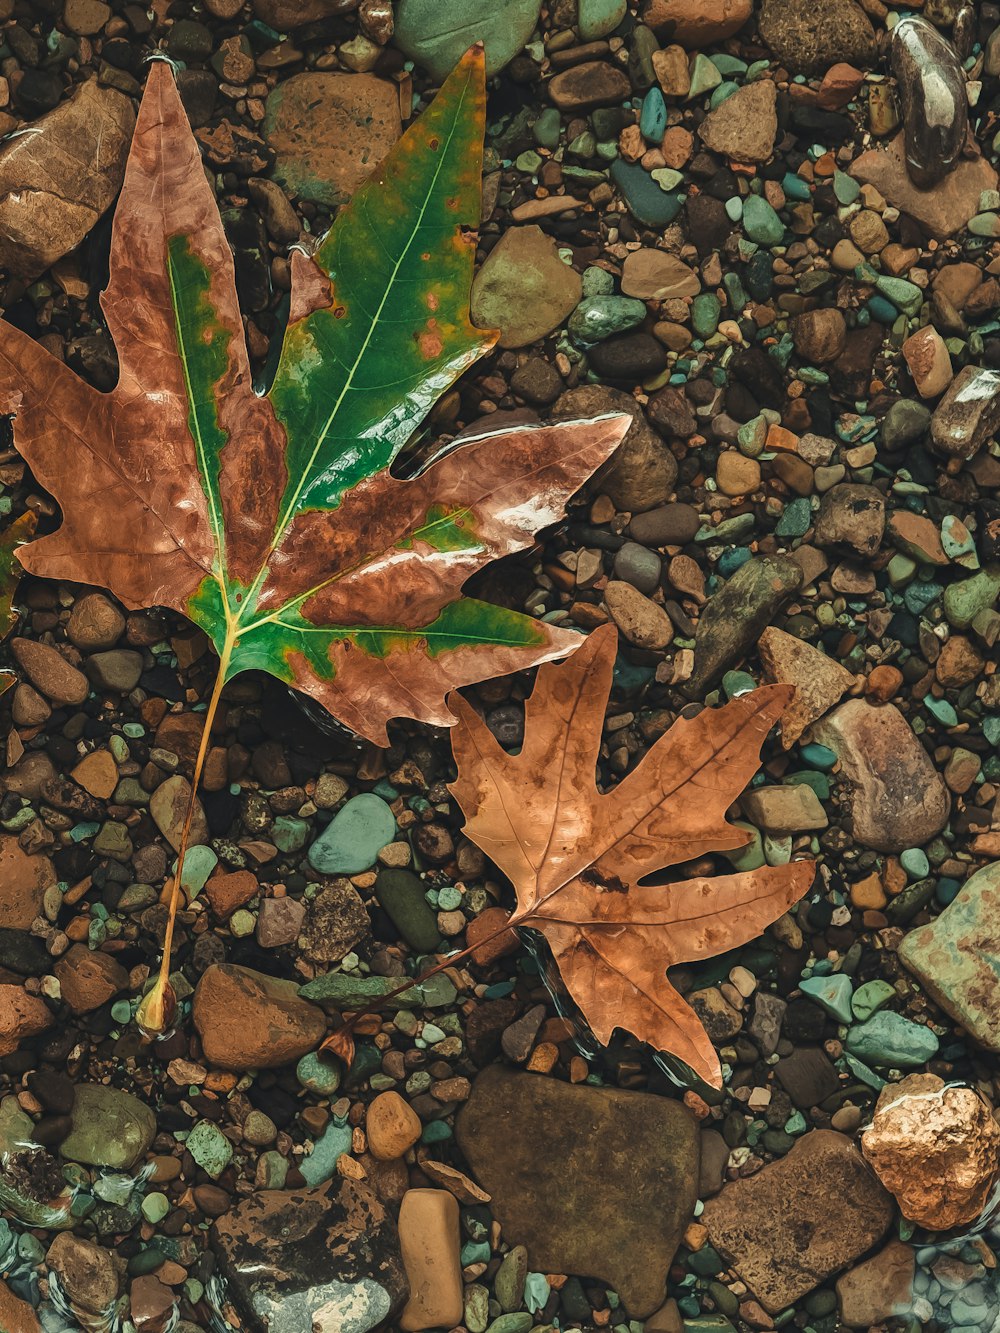 바위가 많은 땅 위에 누워있는 잎